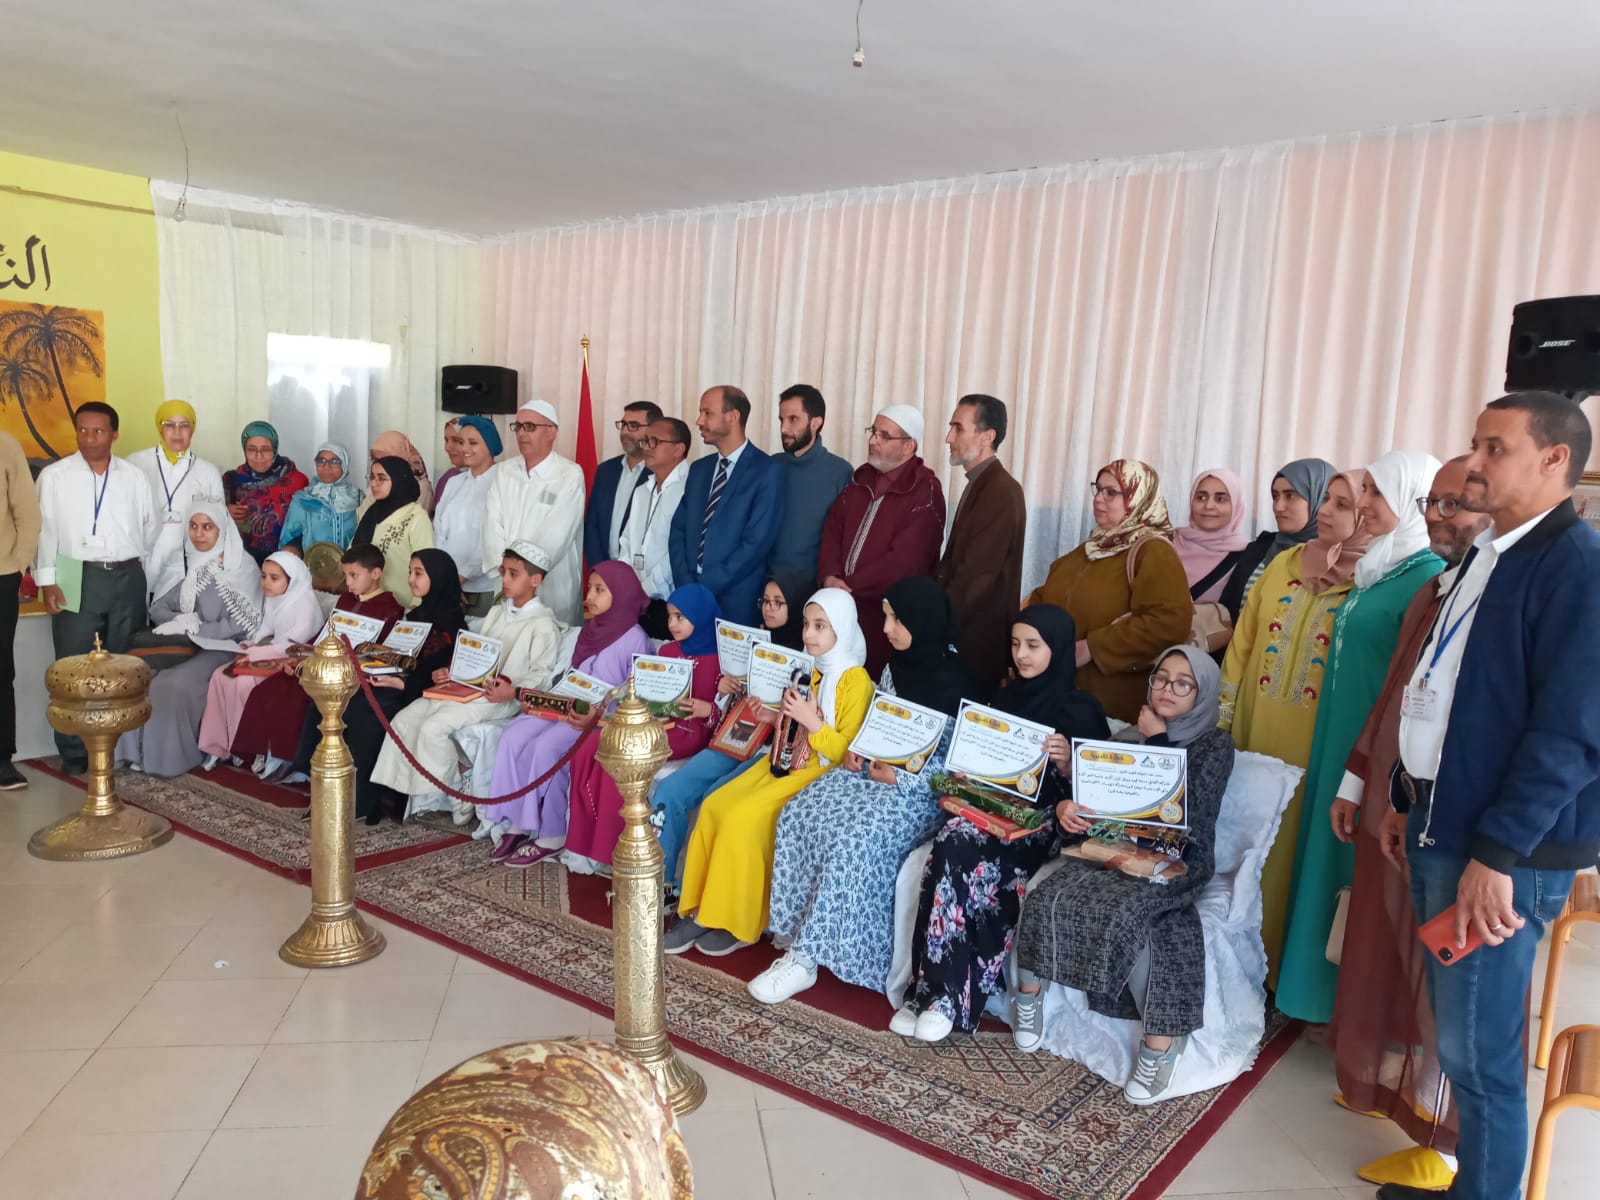 الدروة : جمعية أجيال التنمية تنظم مسابقة في تجويد القرآن الكريم في نسختها الأولى.